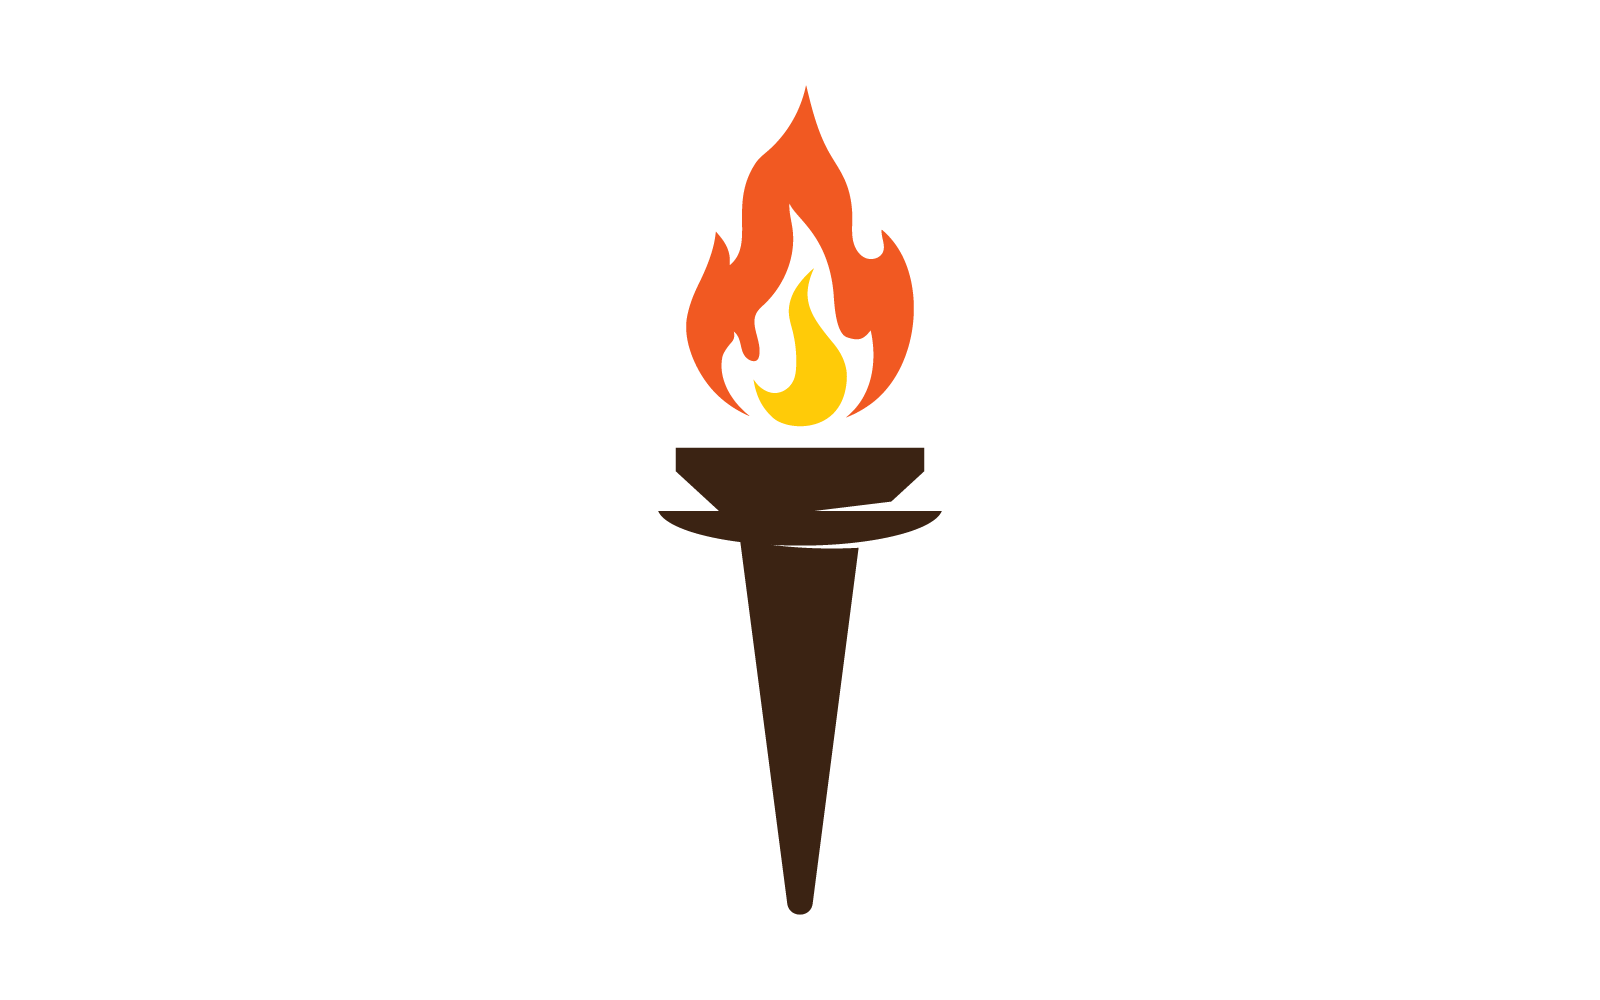 Ілюстрація факел вогонь значок плоский дизайн шаблону